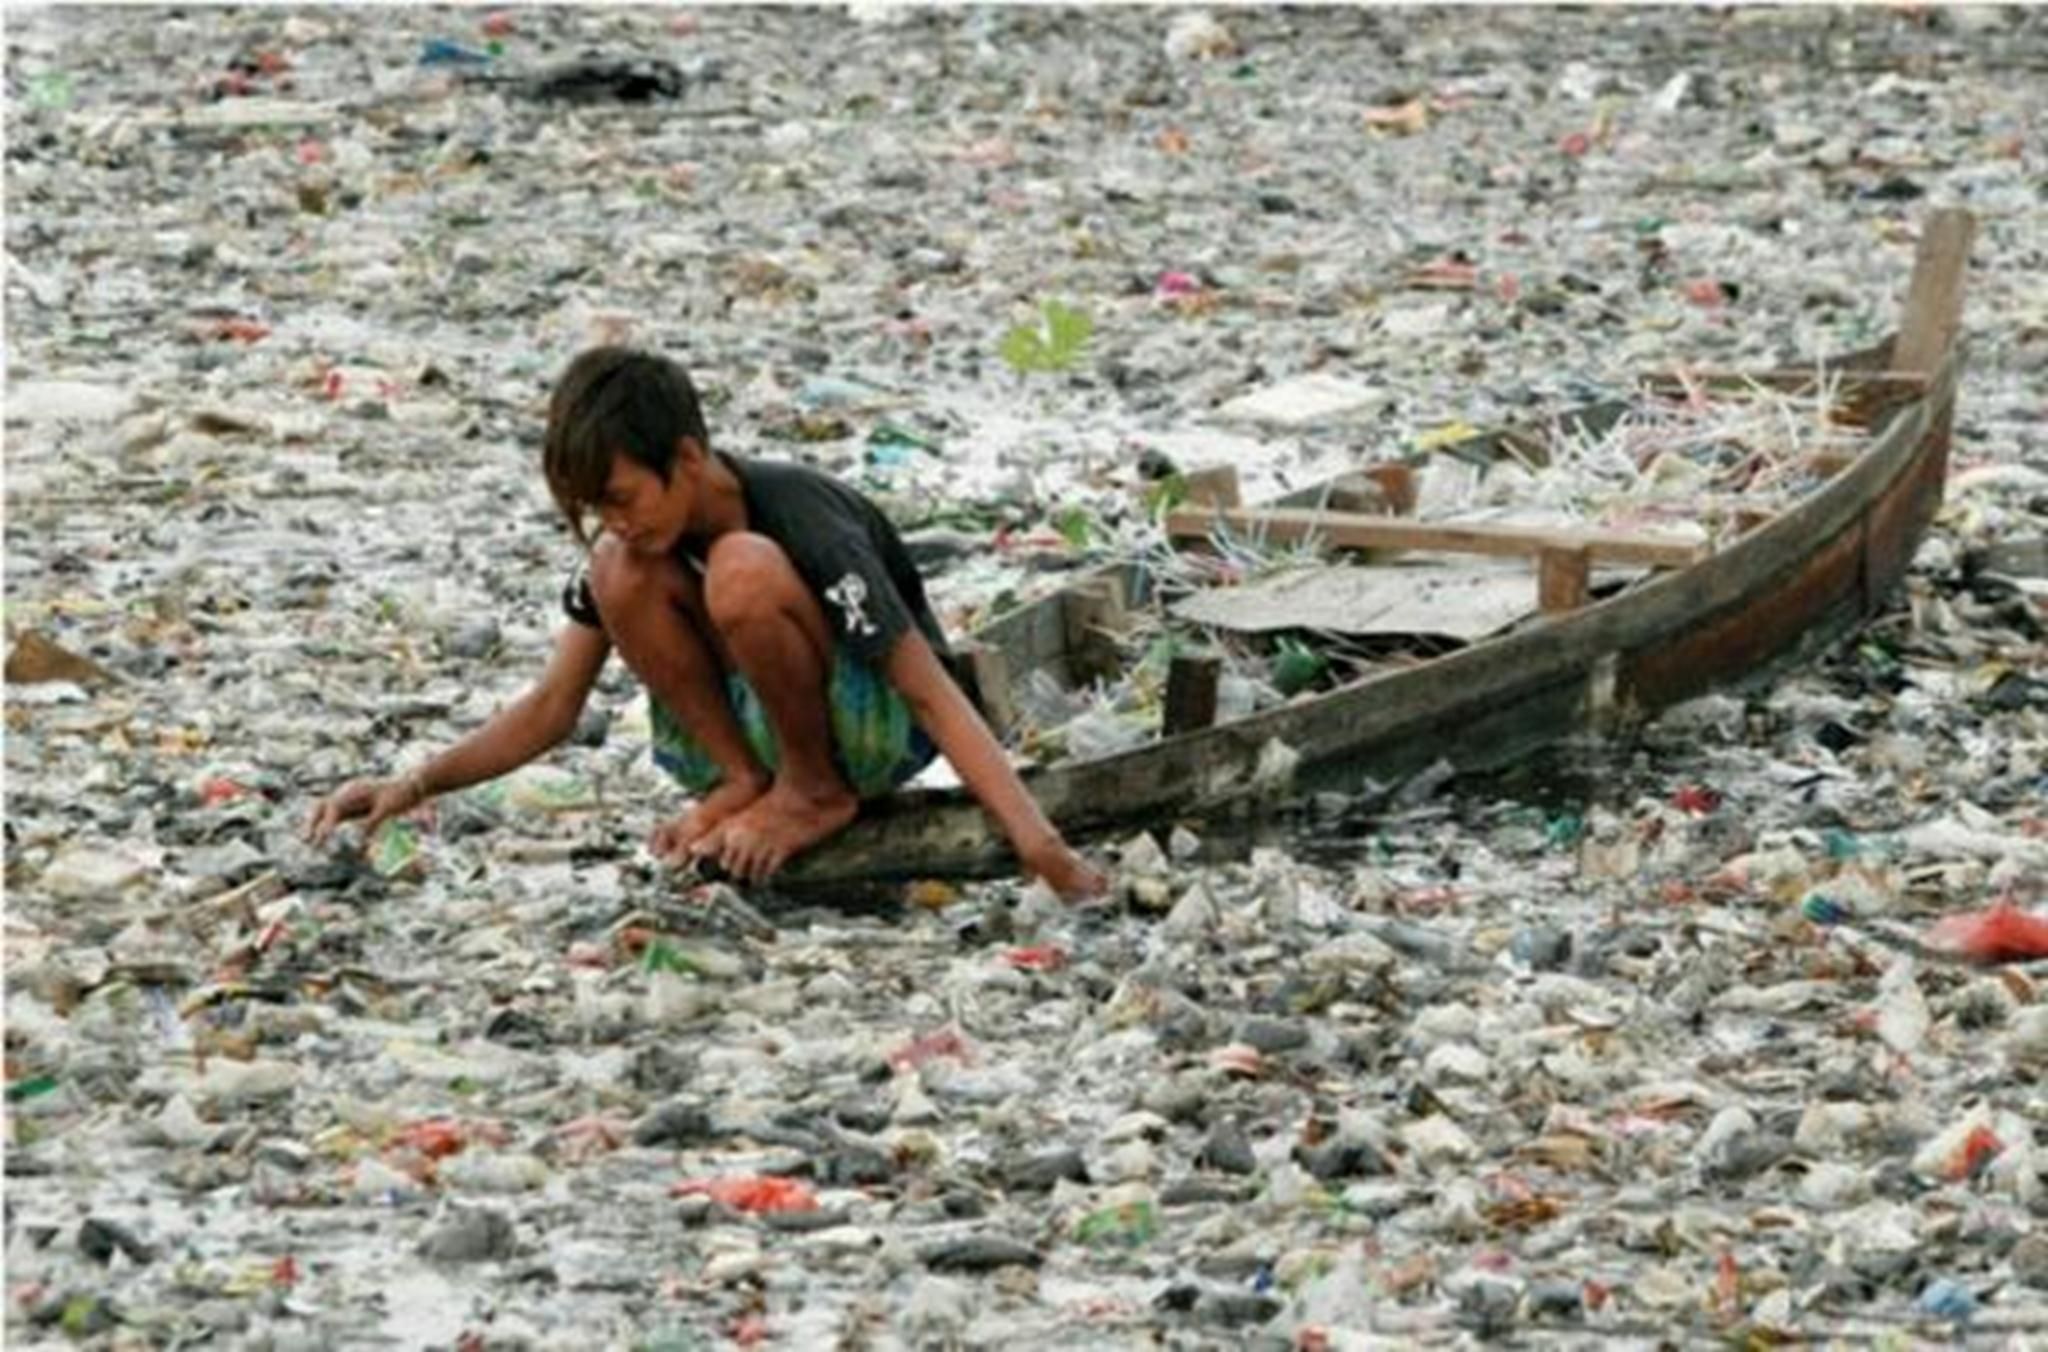 Không chỉ ảnh hưởng tới các loài sinh vật, rác thải còn trực tiếp ảnh hưởng tới cuộc sống của chúng ta (Ảnh: AngelDonate, Twitter)